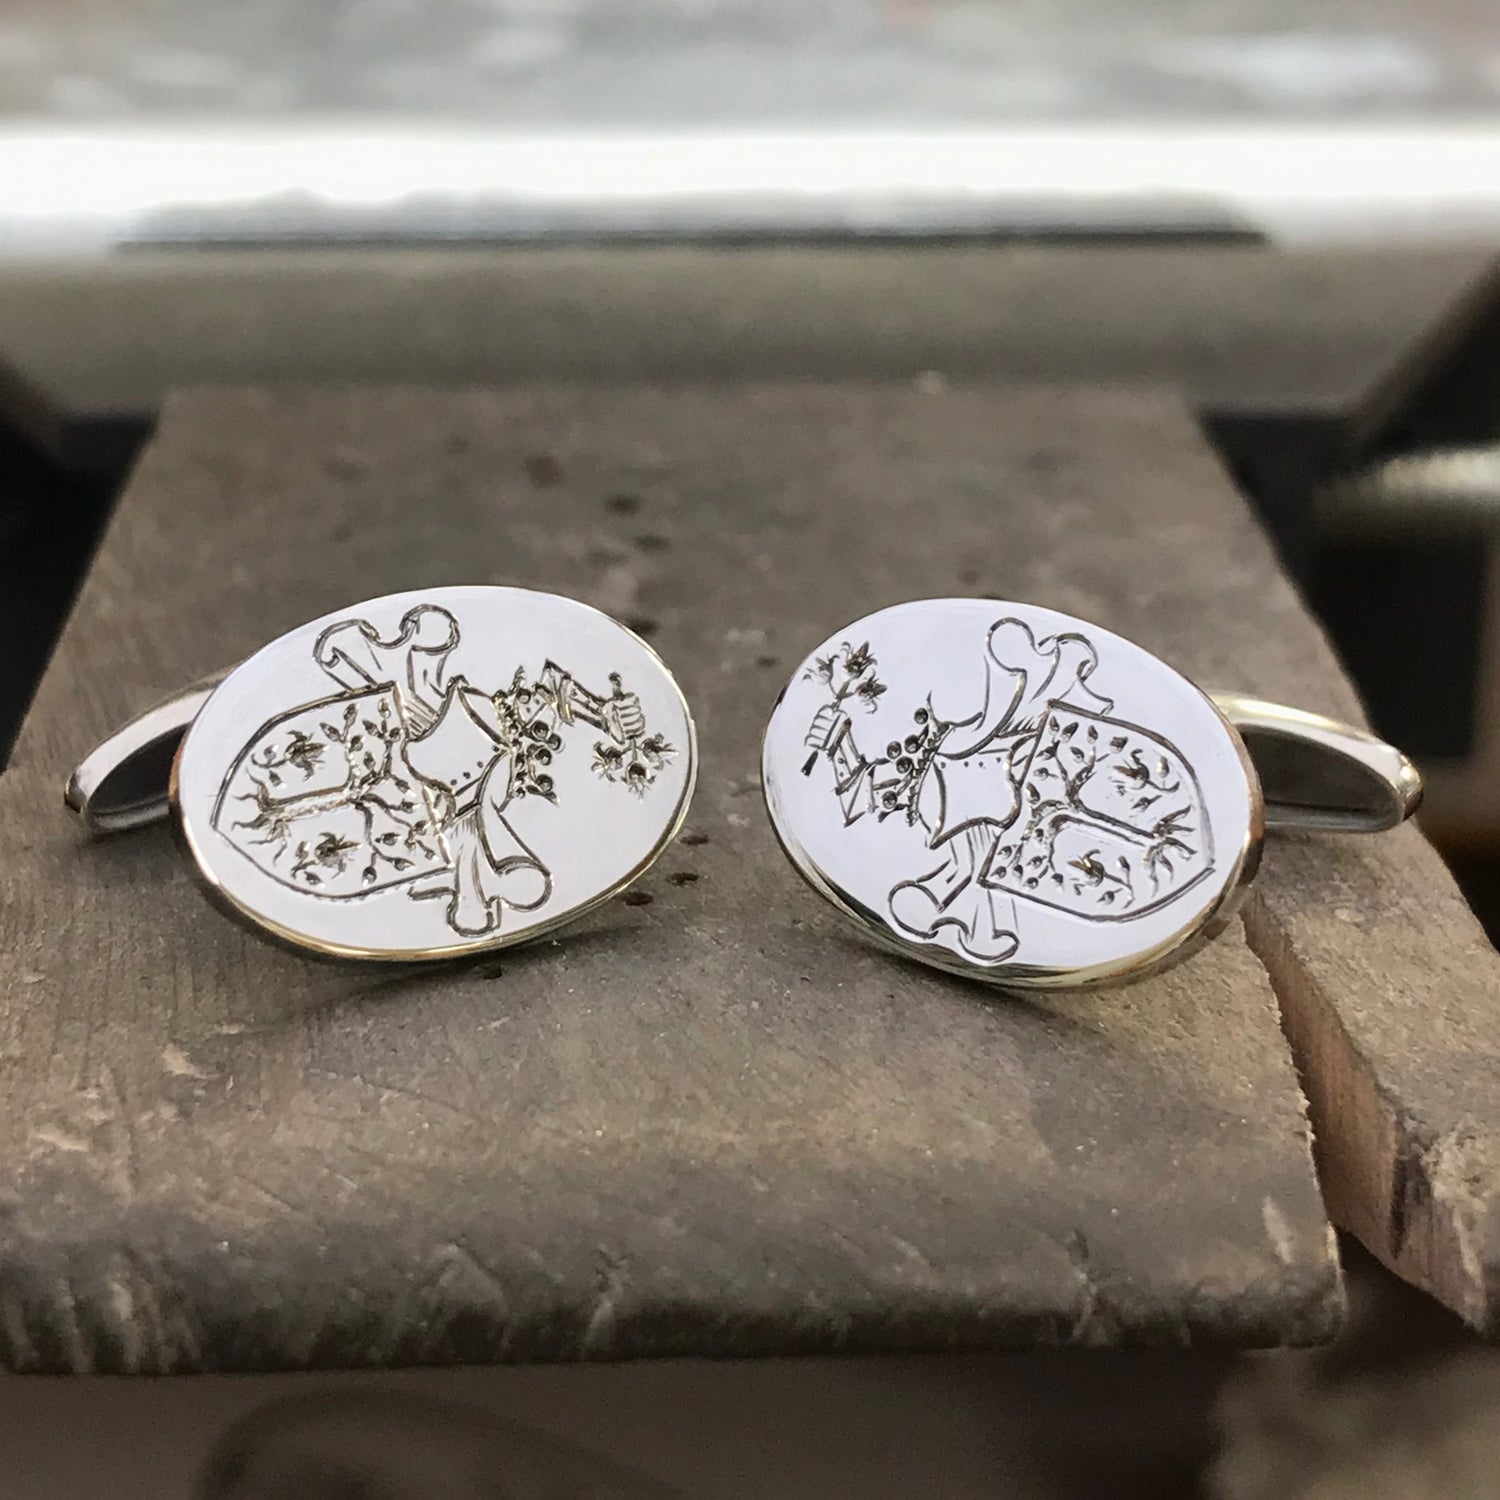 ovale sølv mansjettknapper med håndgravering av slektsvåpen